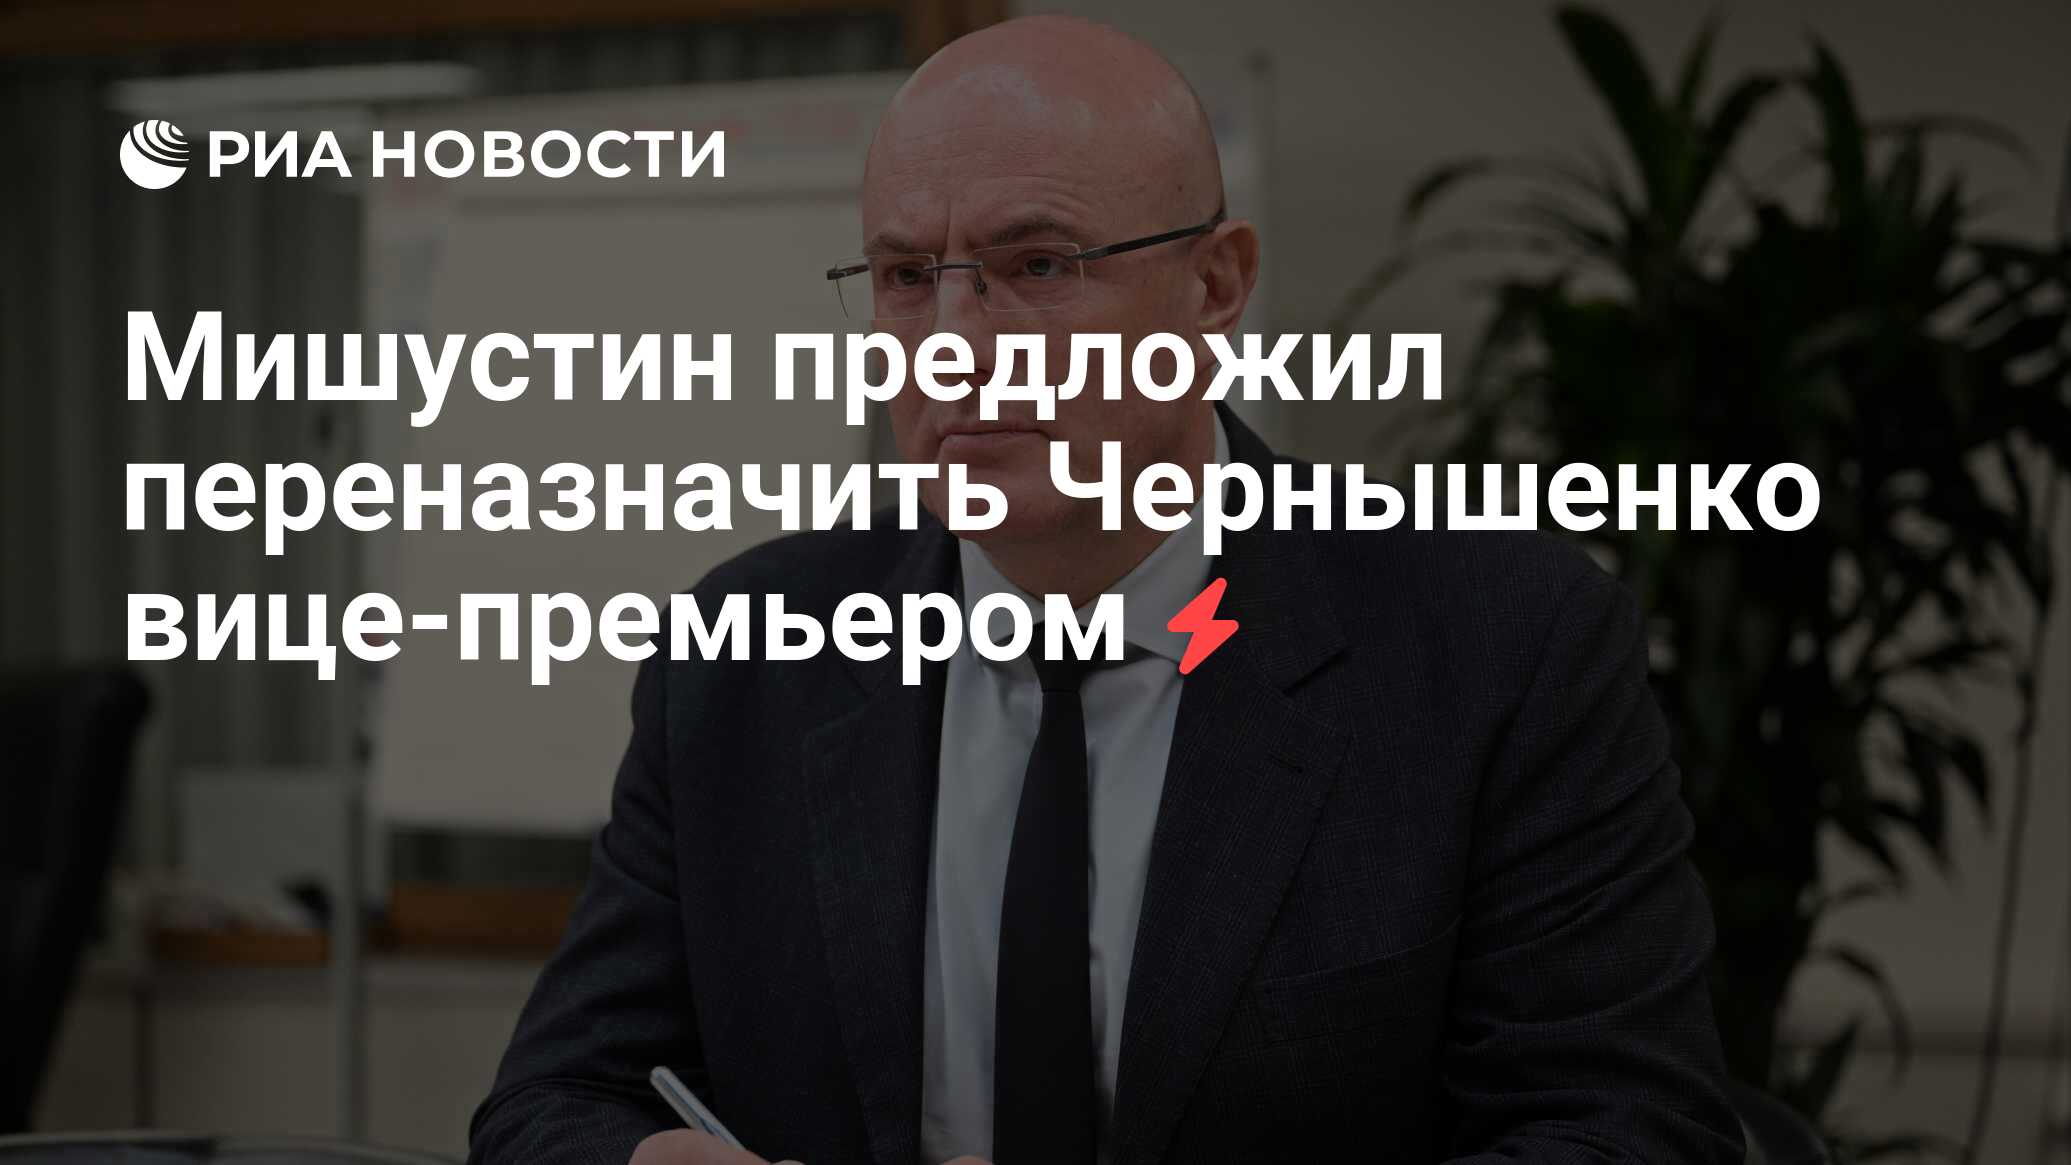 Мишустин предложил переназначить Чернышенко вице-премьером